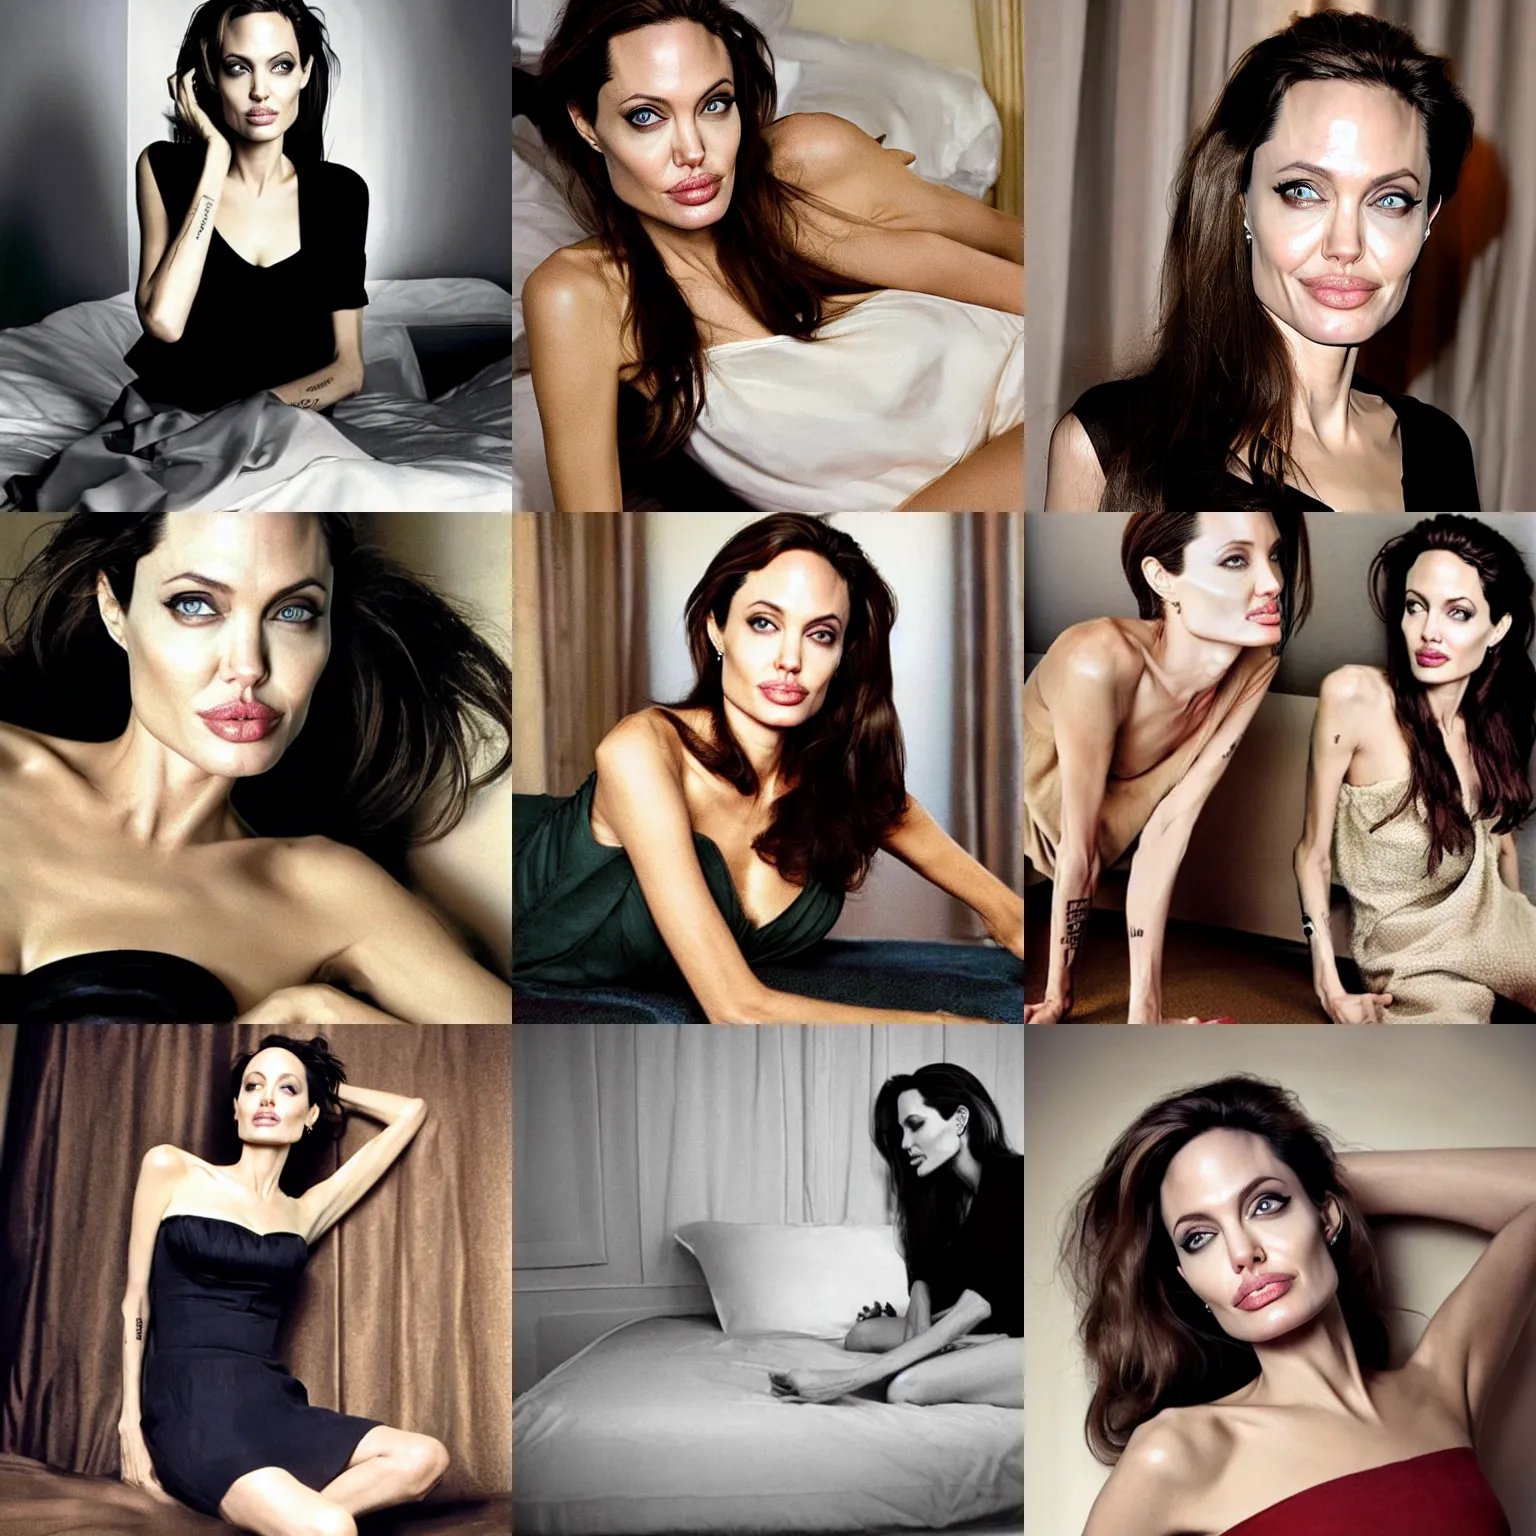 Prompt: Angelina Jolie in the bedroom